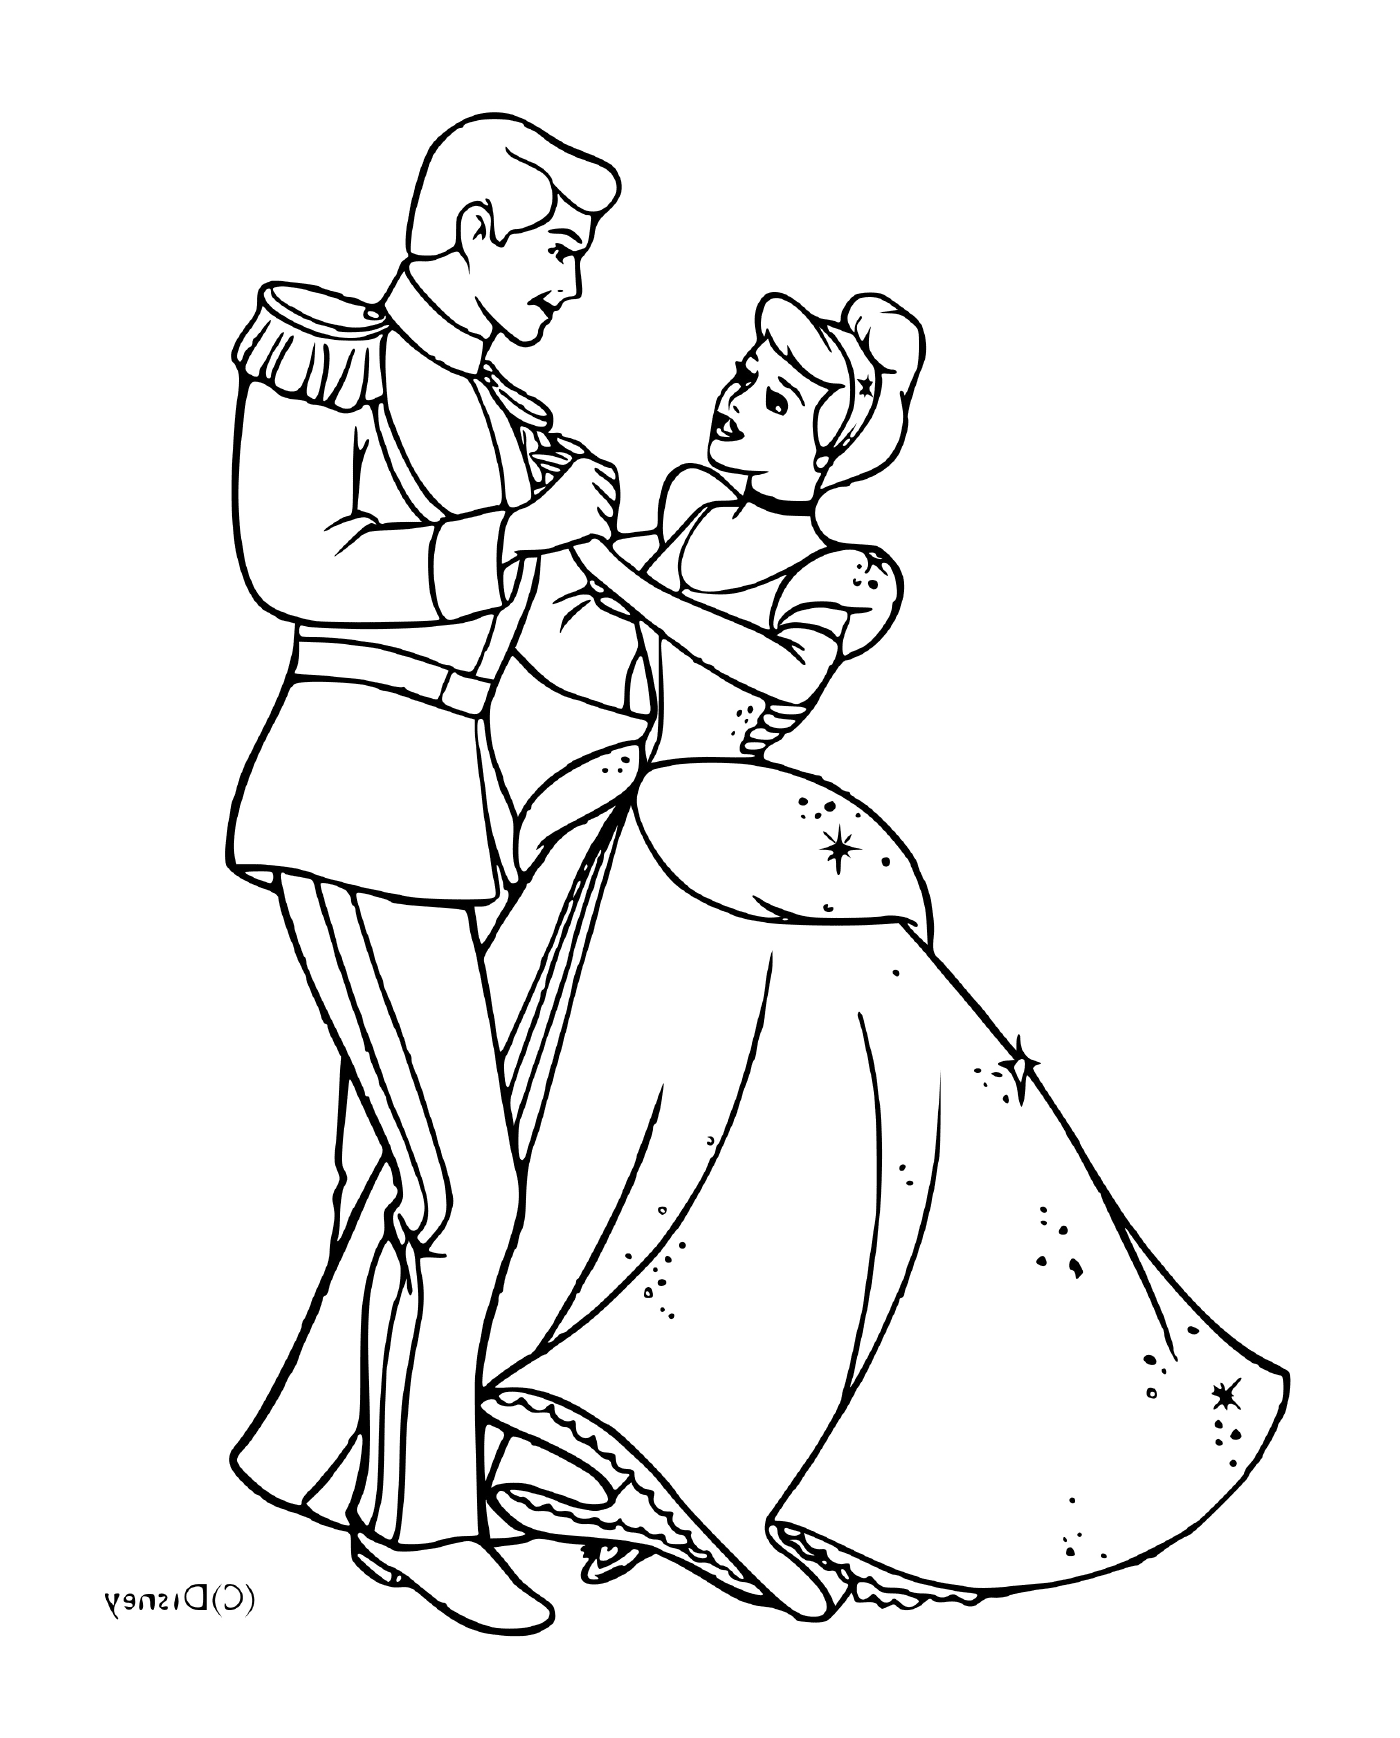  Cenerentola e il suo affascinante principe che balla insieme 